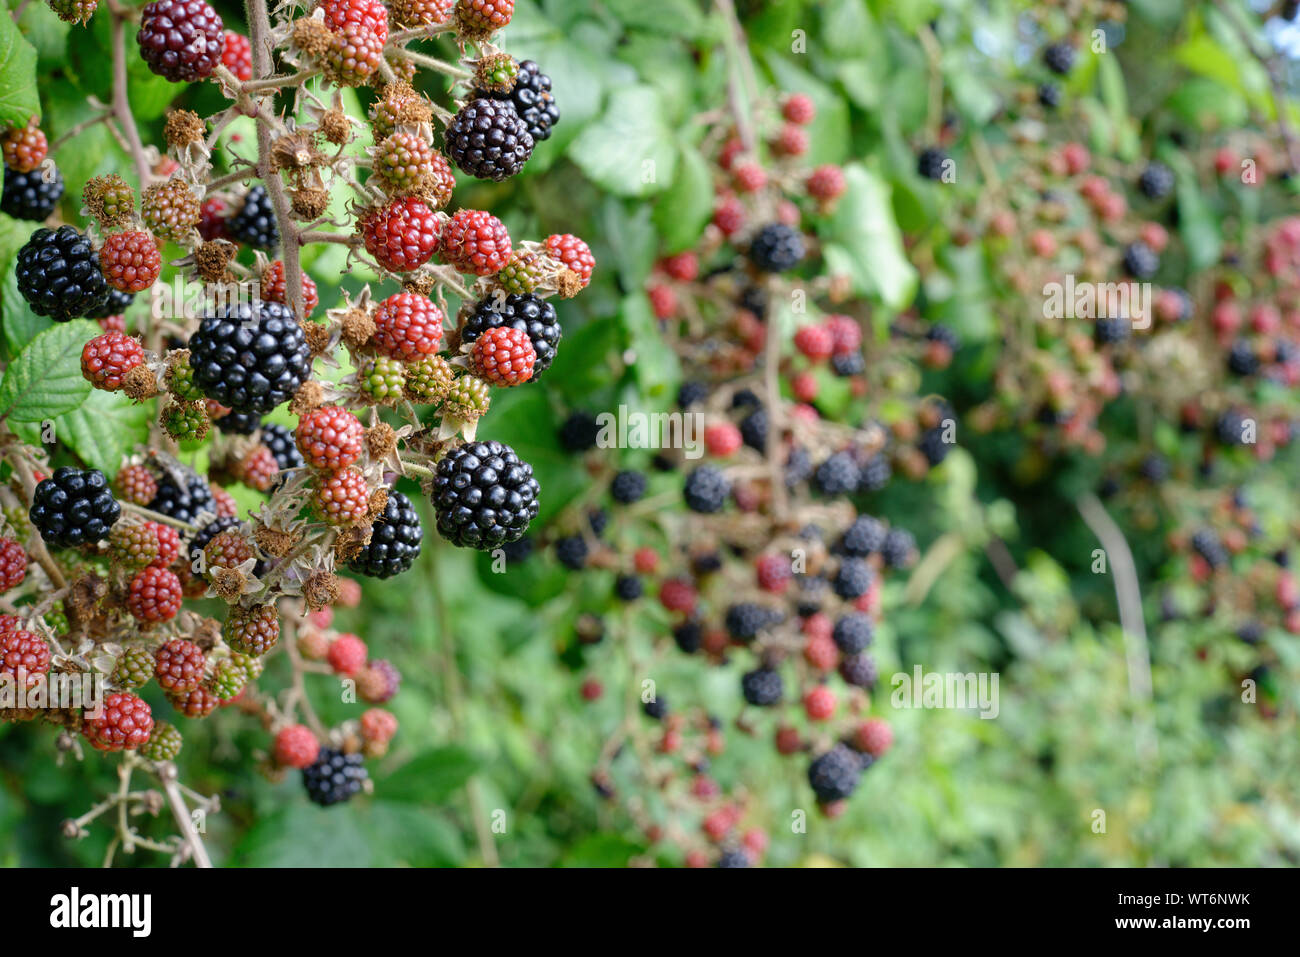 Crop of wild blackberries in a hedgerow. Stock Photo